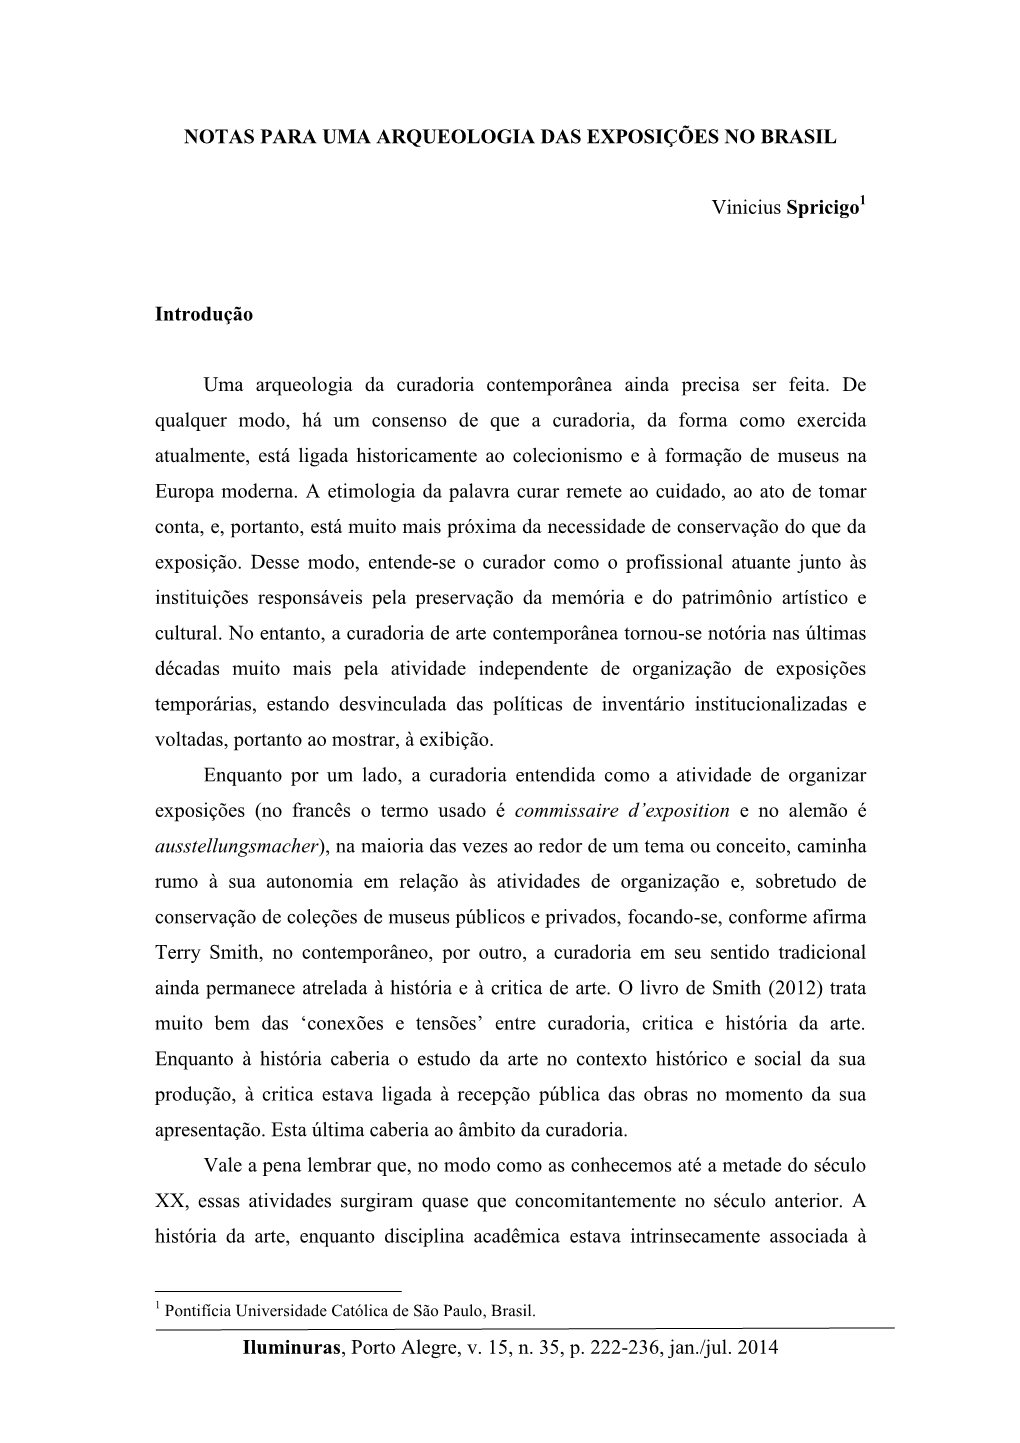 Iluminuras, Porto Alegre, V. 15, N. 35, P. 222-236, Jan./Jul. 2014 NOTAS PARA UMA ARQUEOLOGIA DAS EXPOSIÇÕES NO BRASIL Viniciu